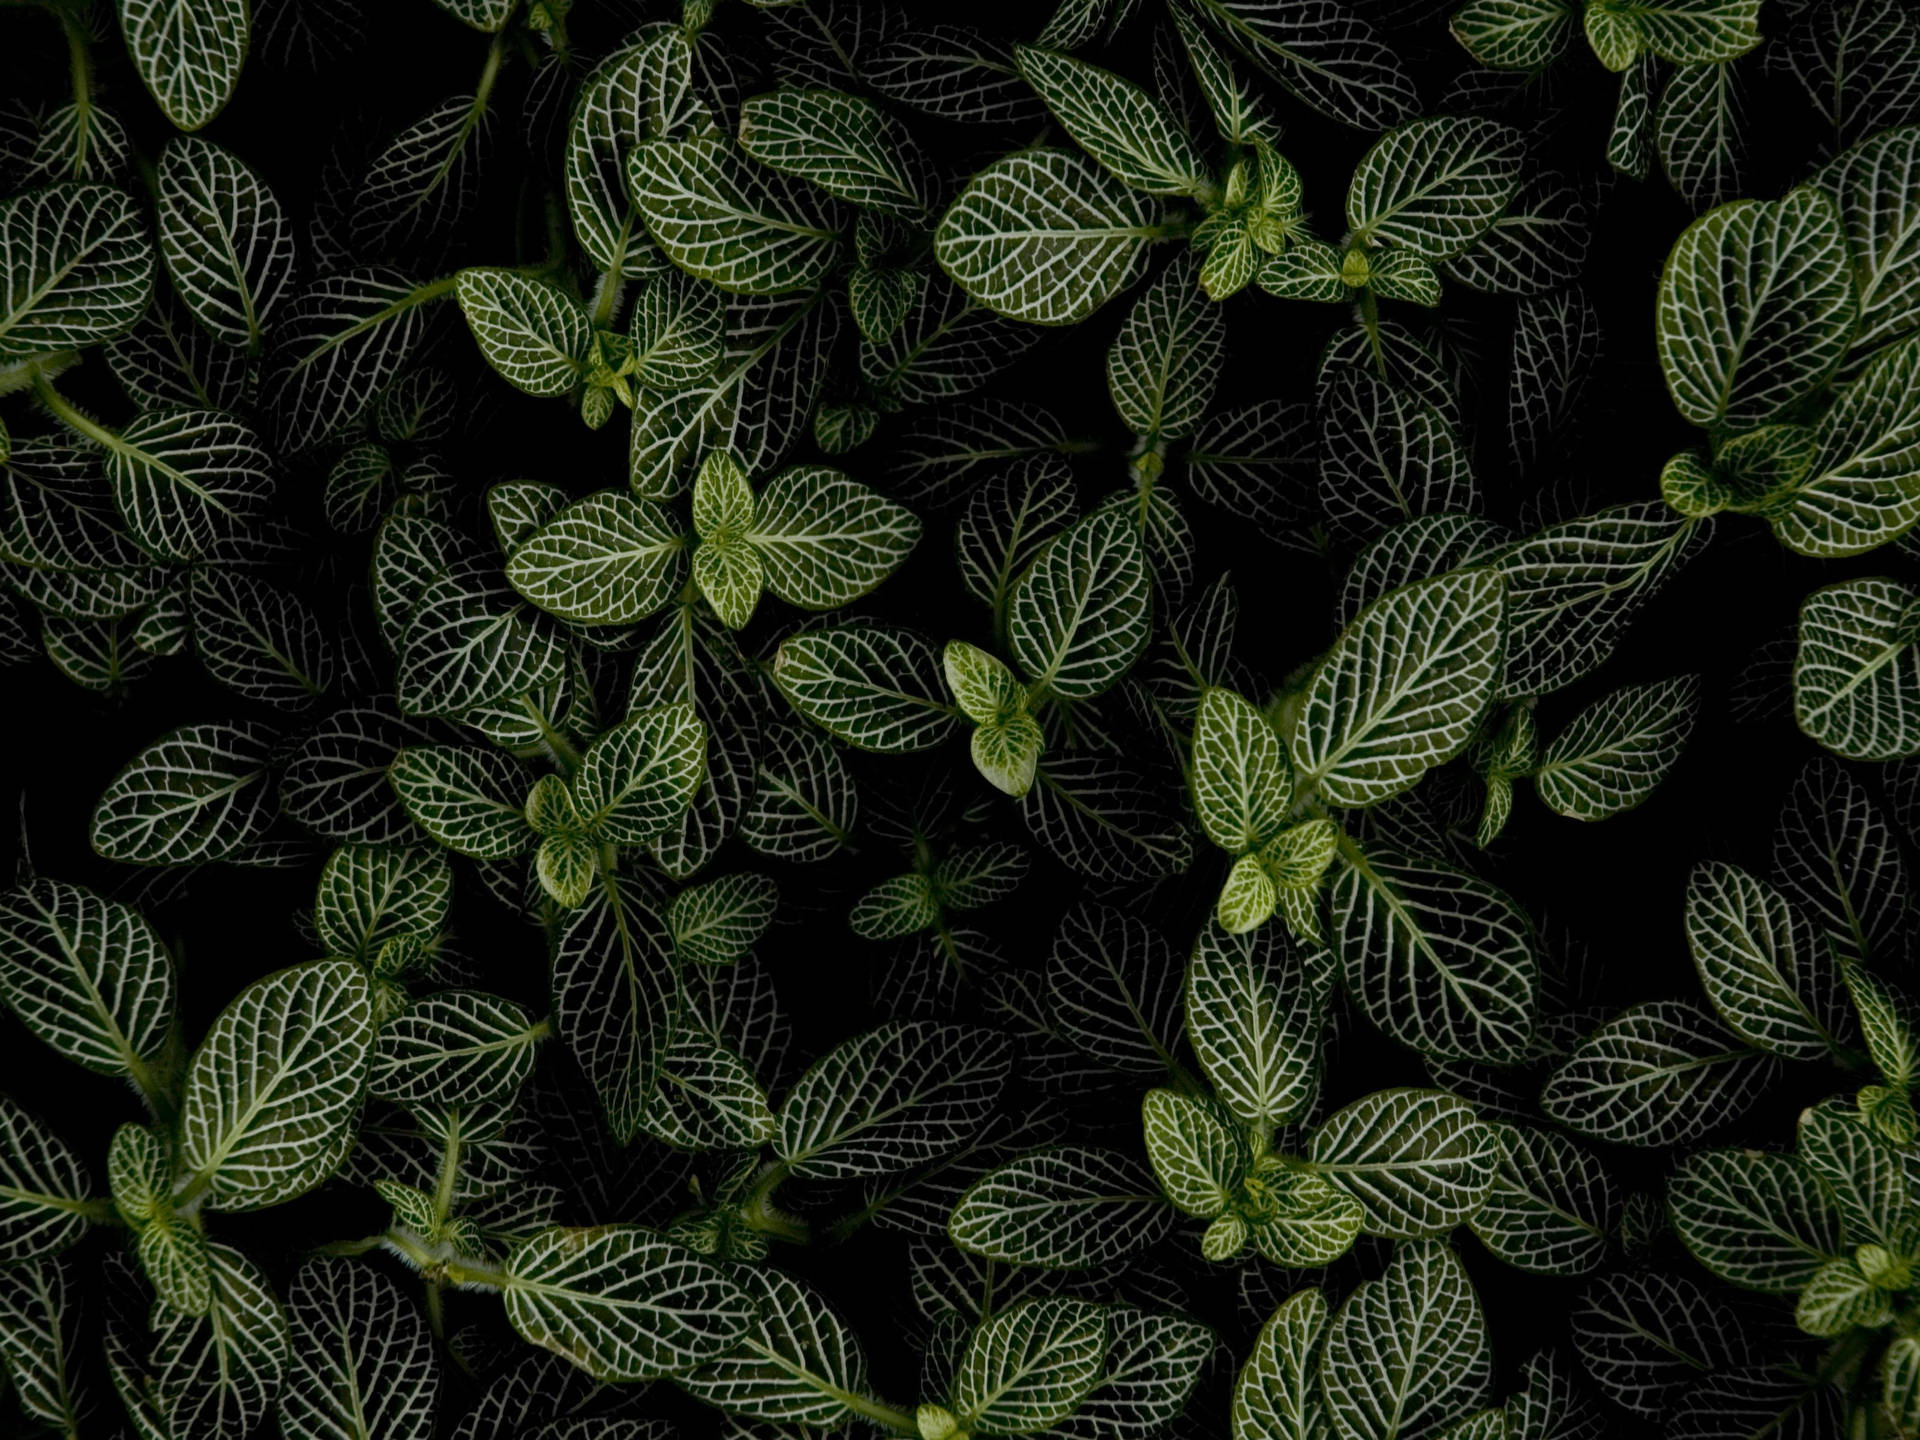 Mint Plant In Dark Background